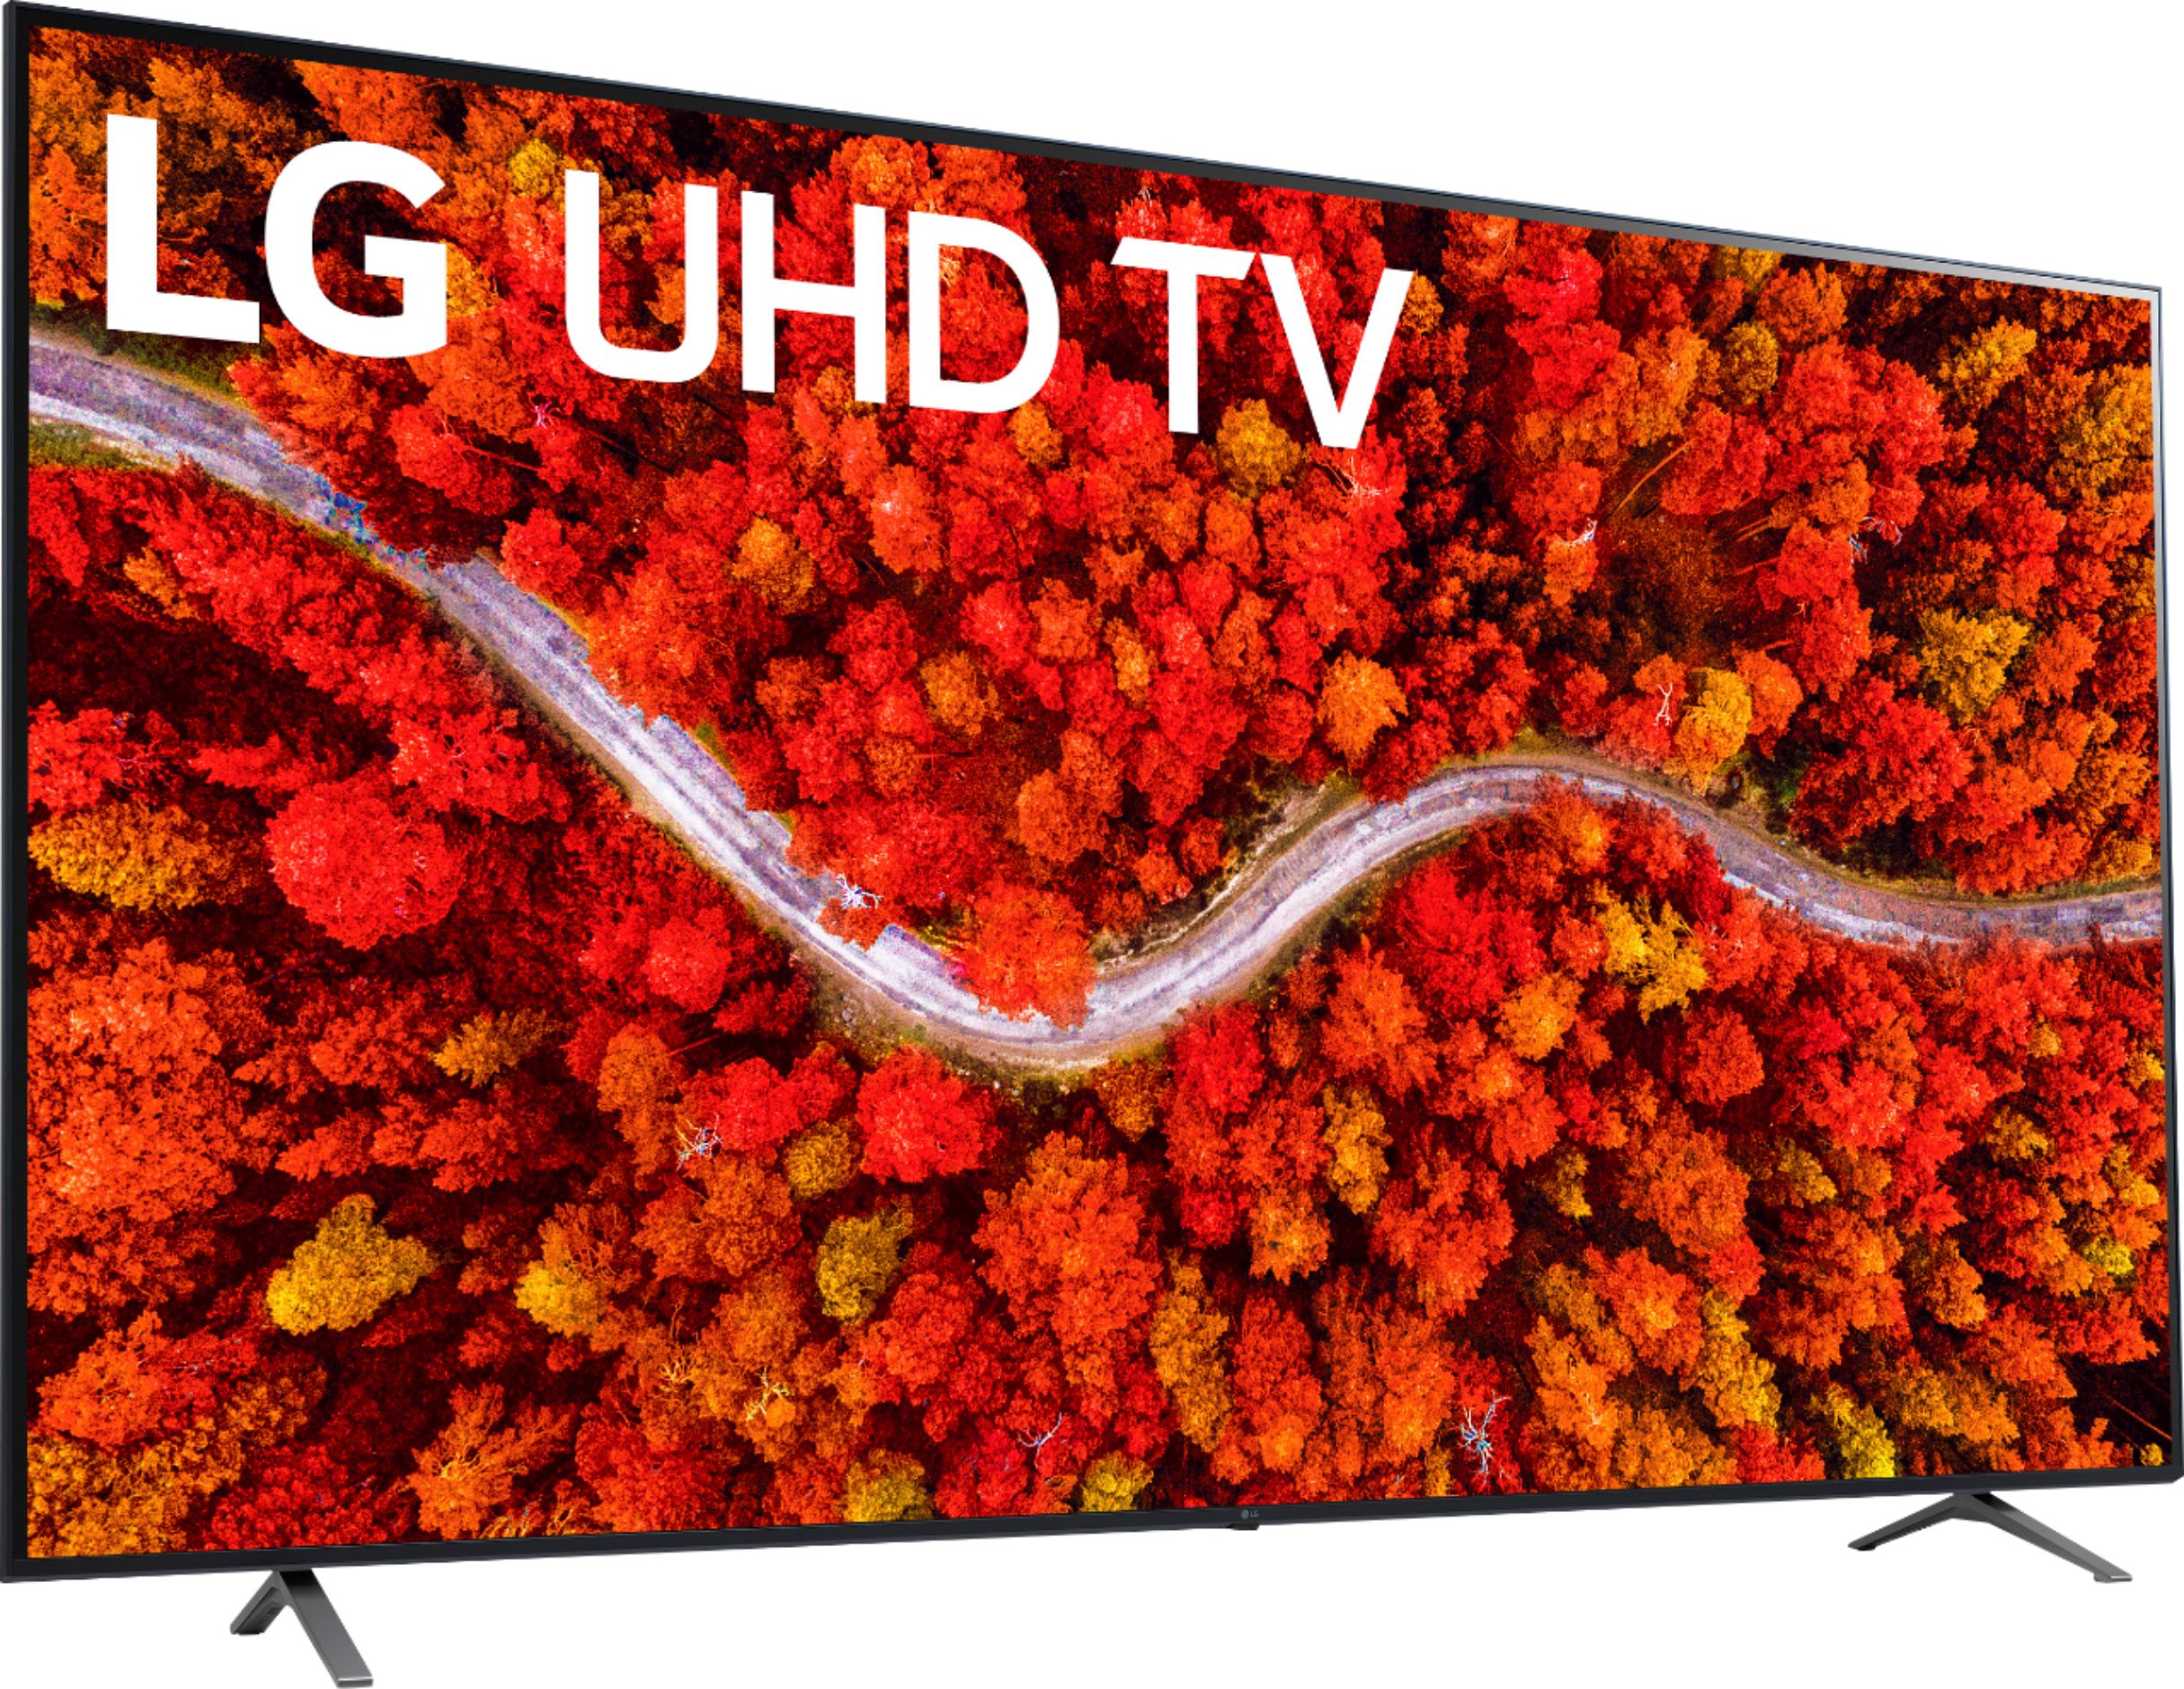 82" LG UP8770 (2021) 4K UHD LED Smart TV @ Best Buy $1099.99